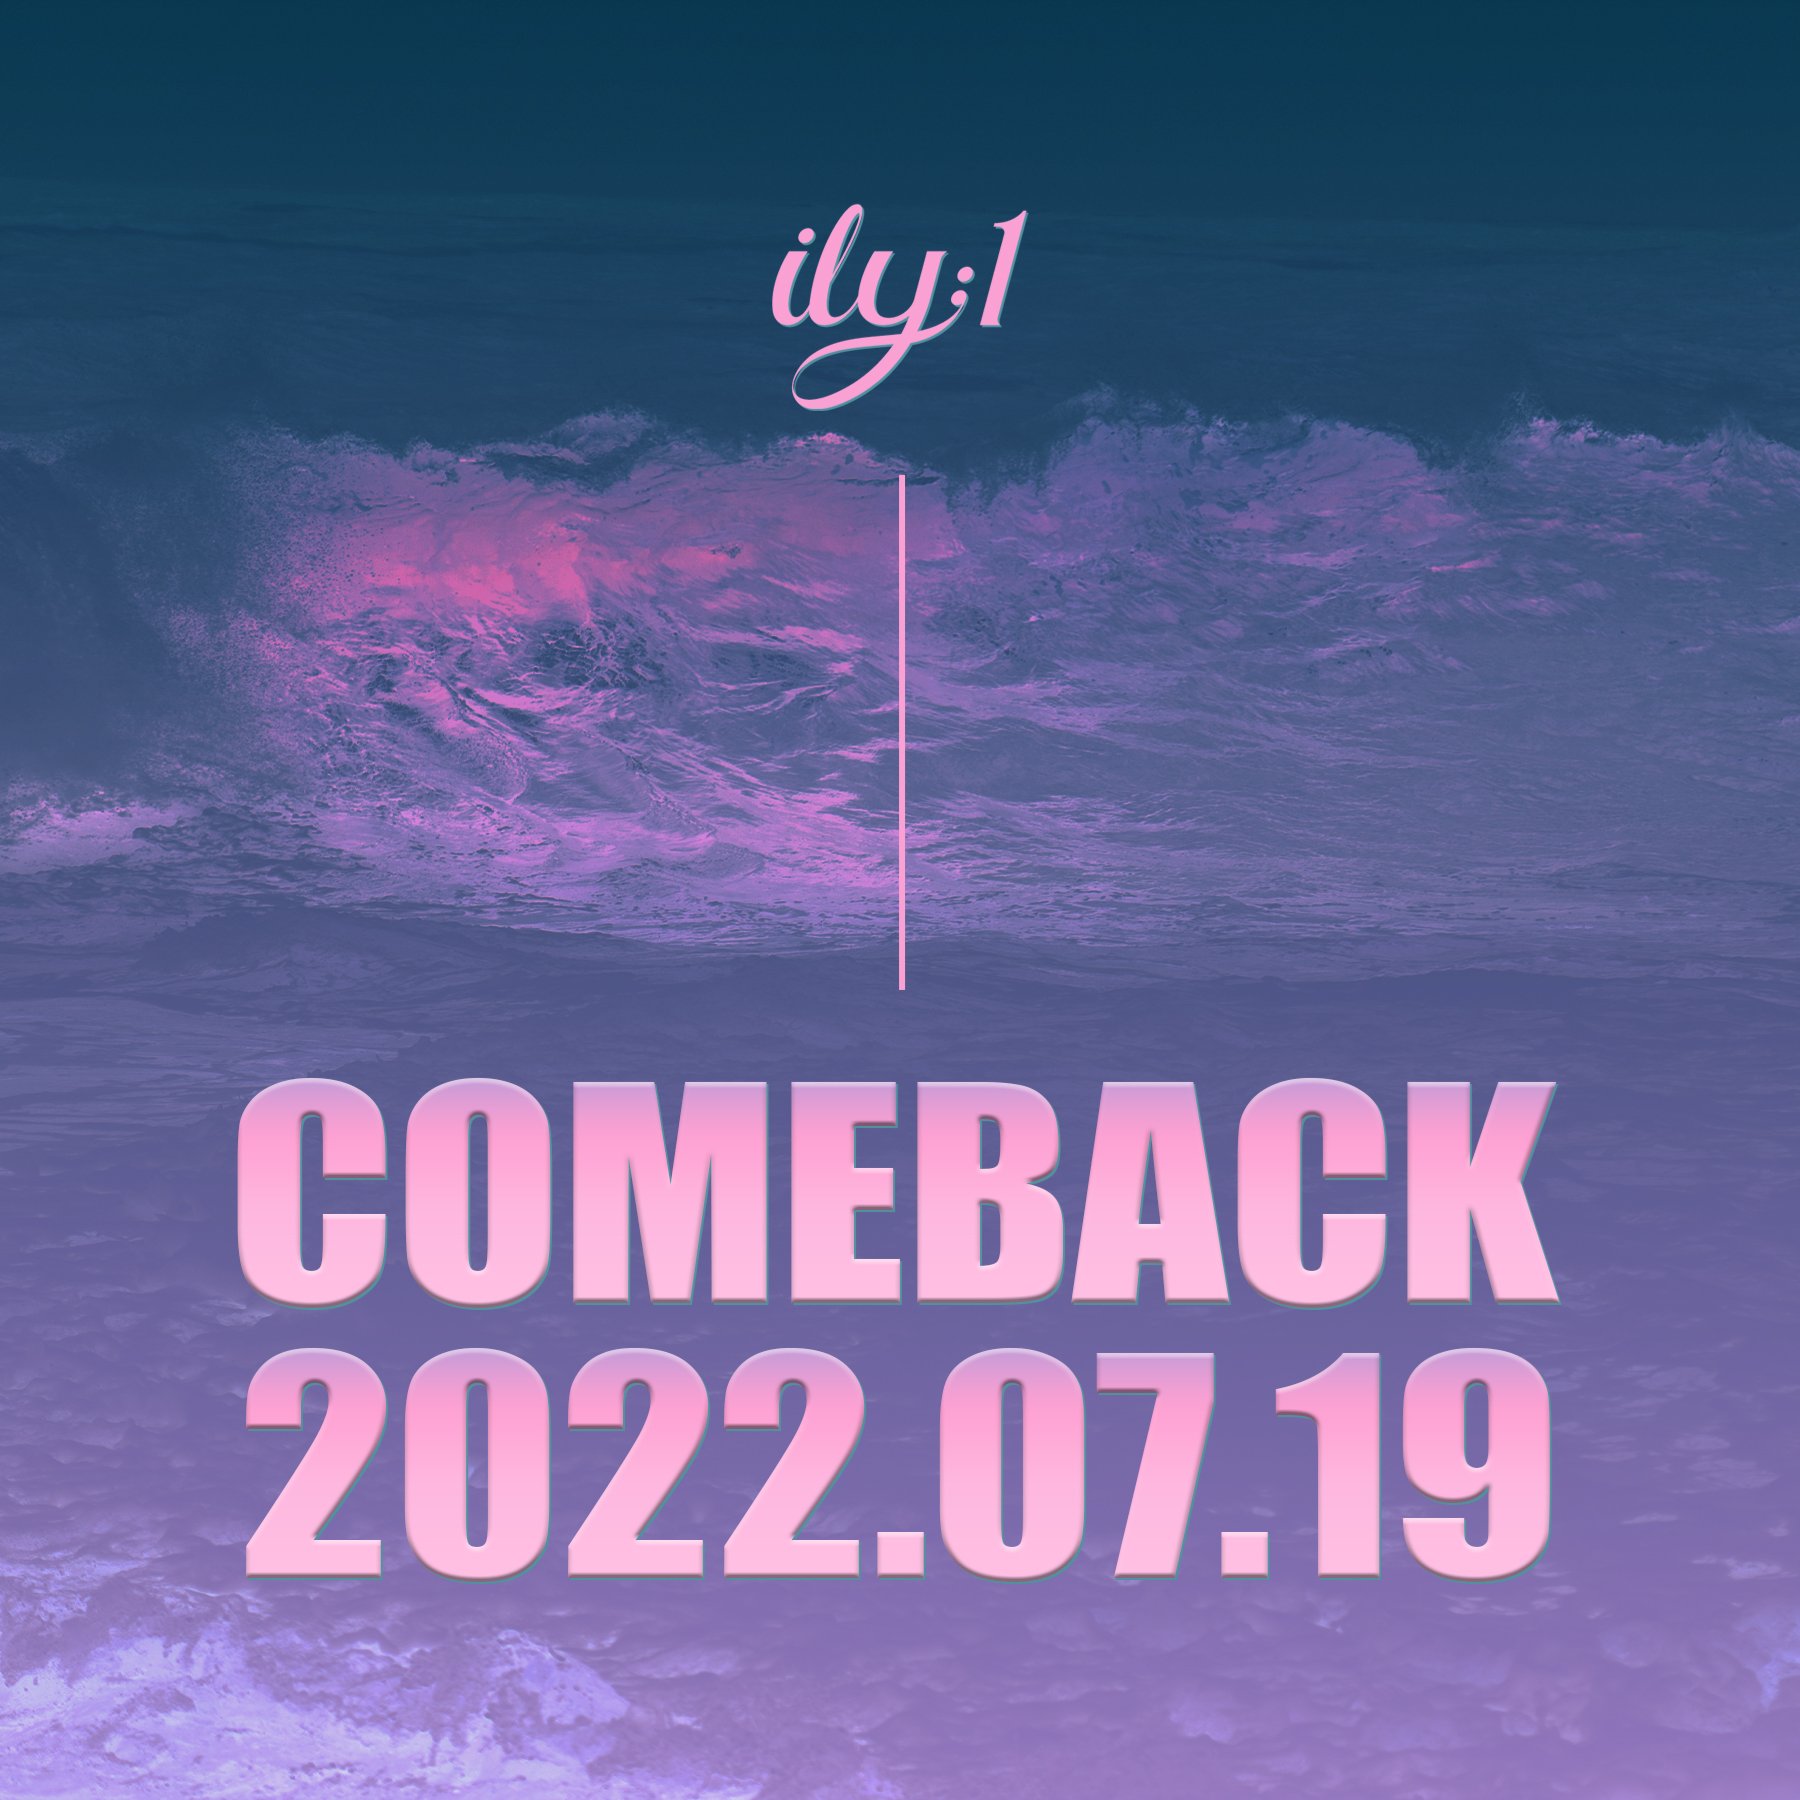 ILY:1 realizará su primer regreso comeback